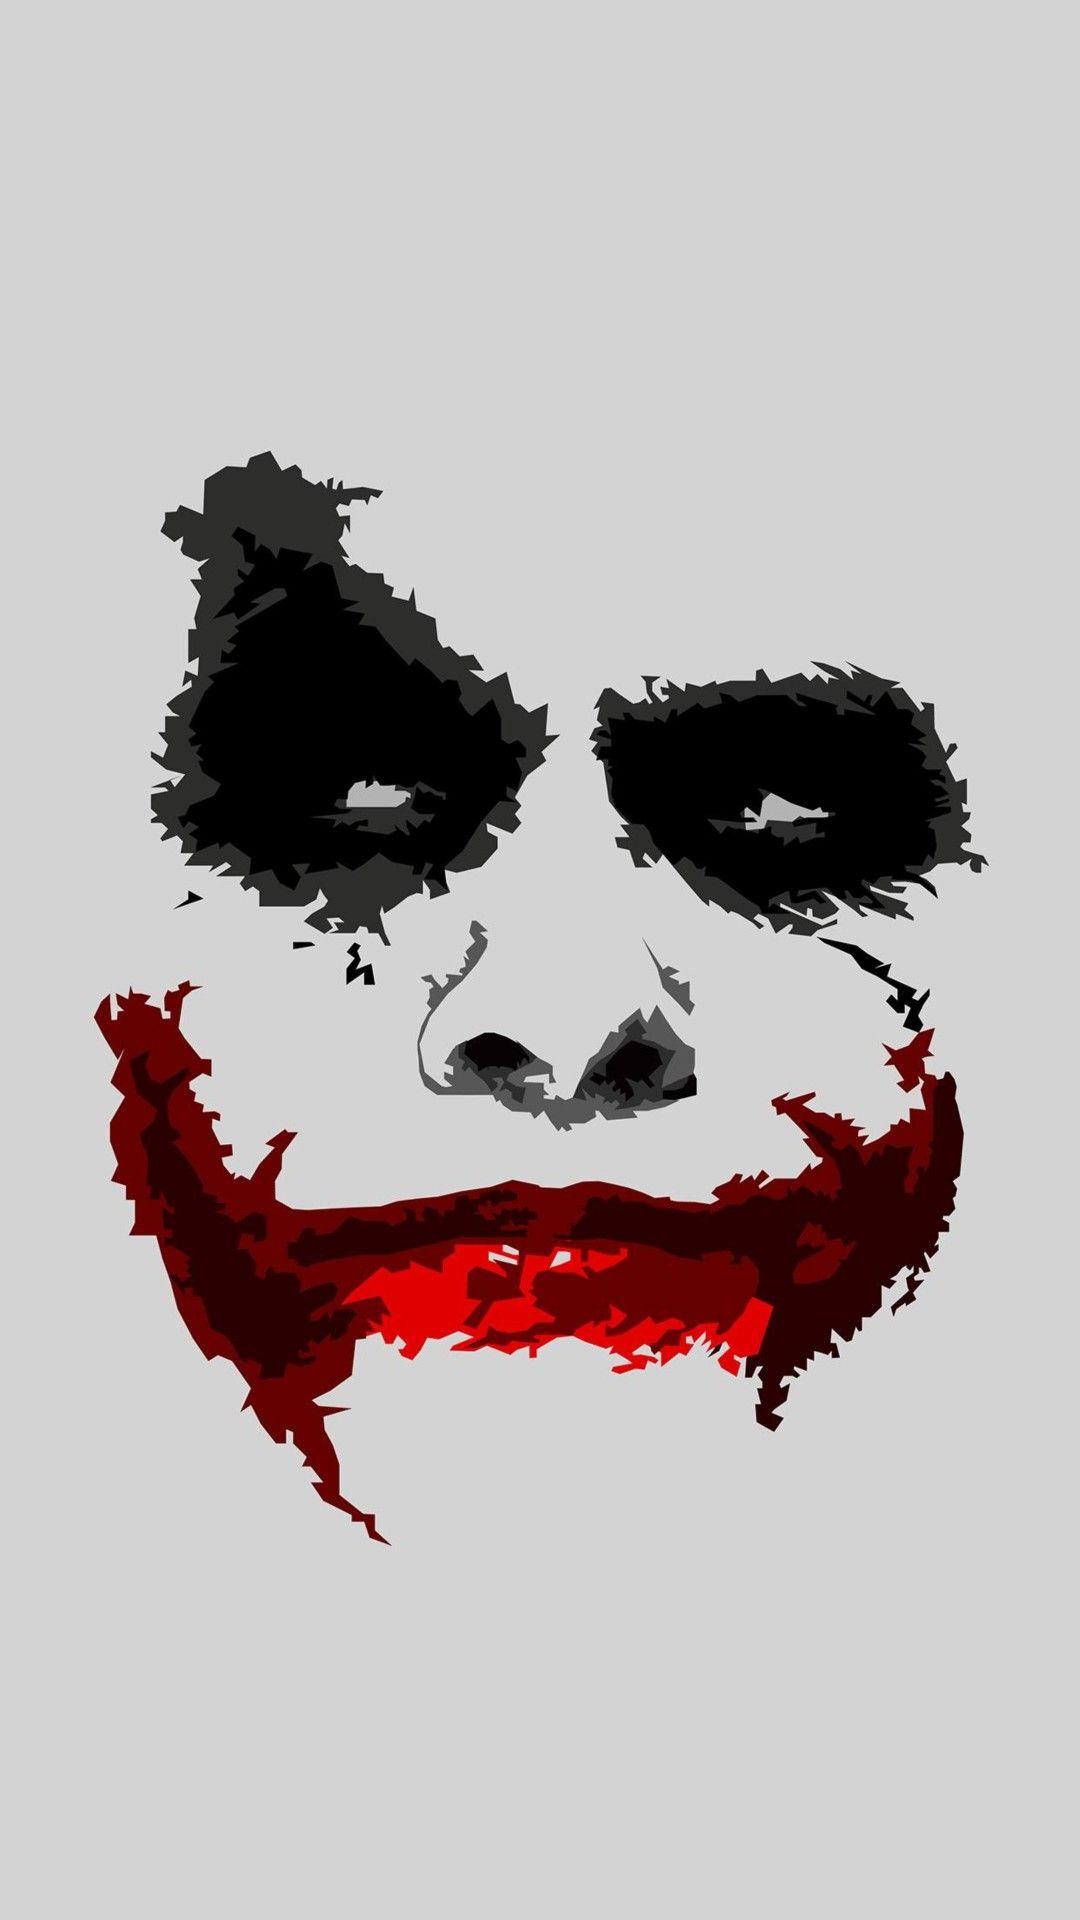 Joker Art. Joker iphone wallpaper, Joker pics, Joker poster